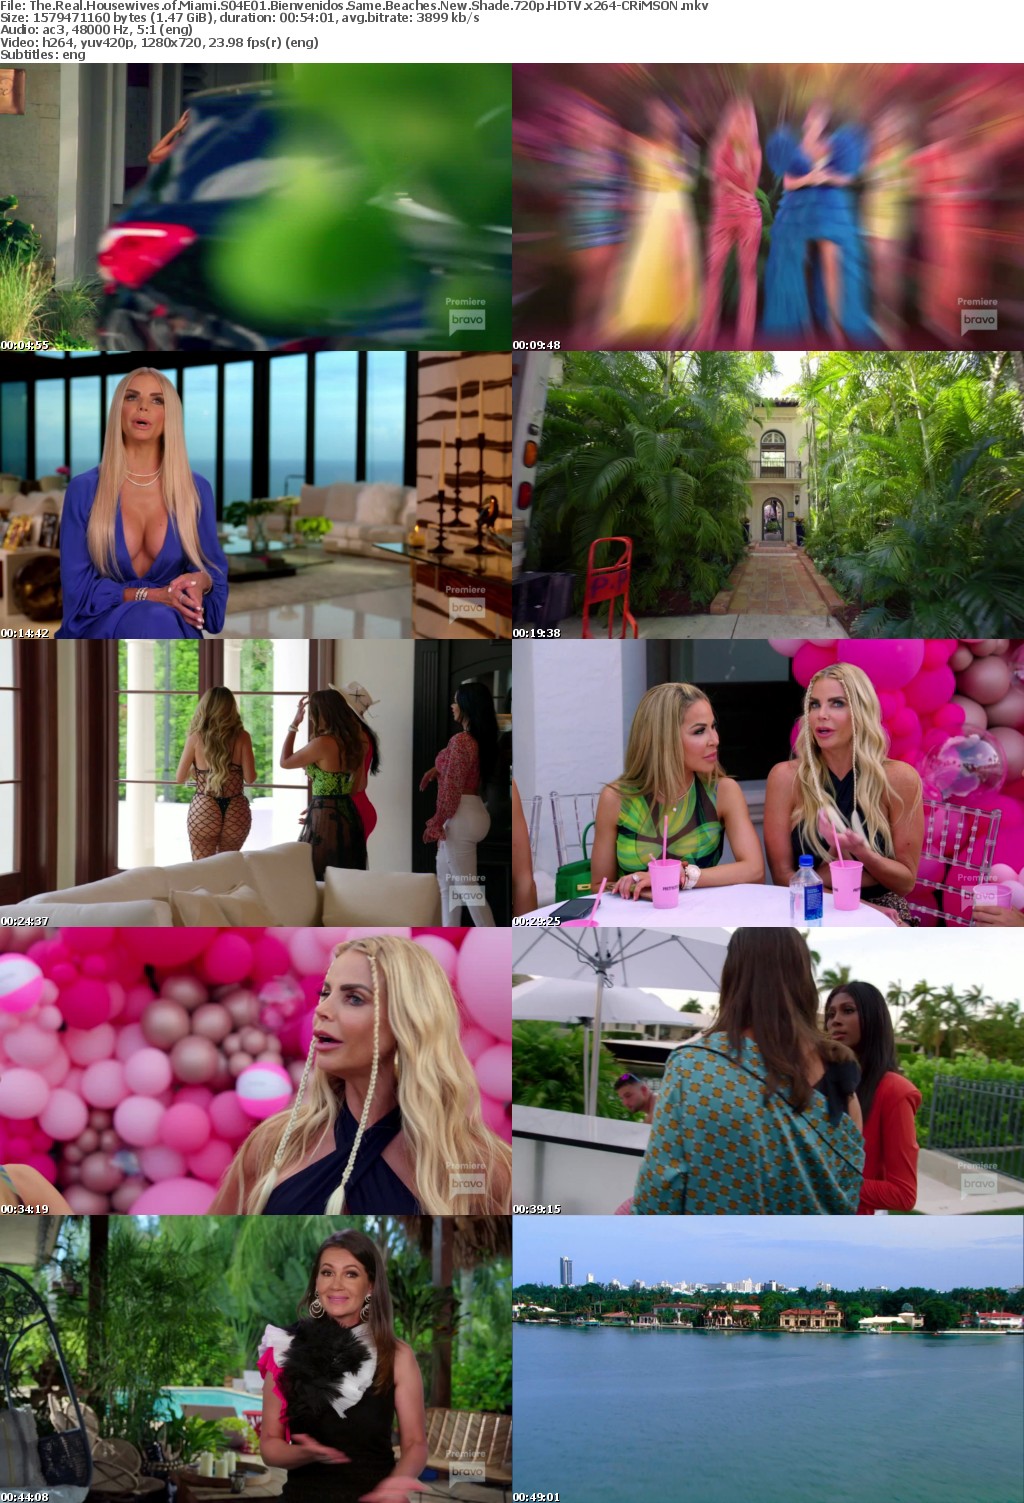 The Real Housewives of Miami S04E01 Bienvenidos Same Beaches New Shade 720p HDTV x264-CRiMSON